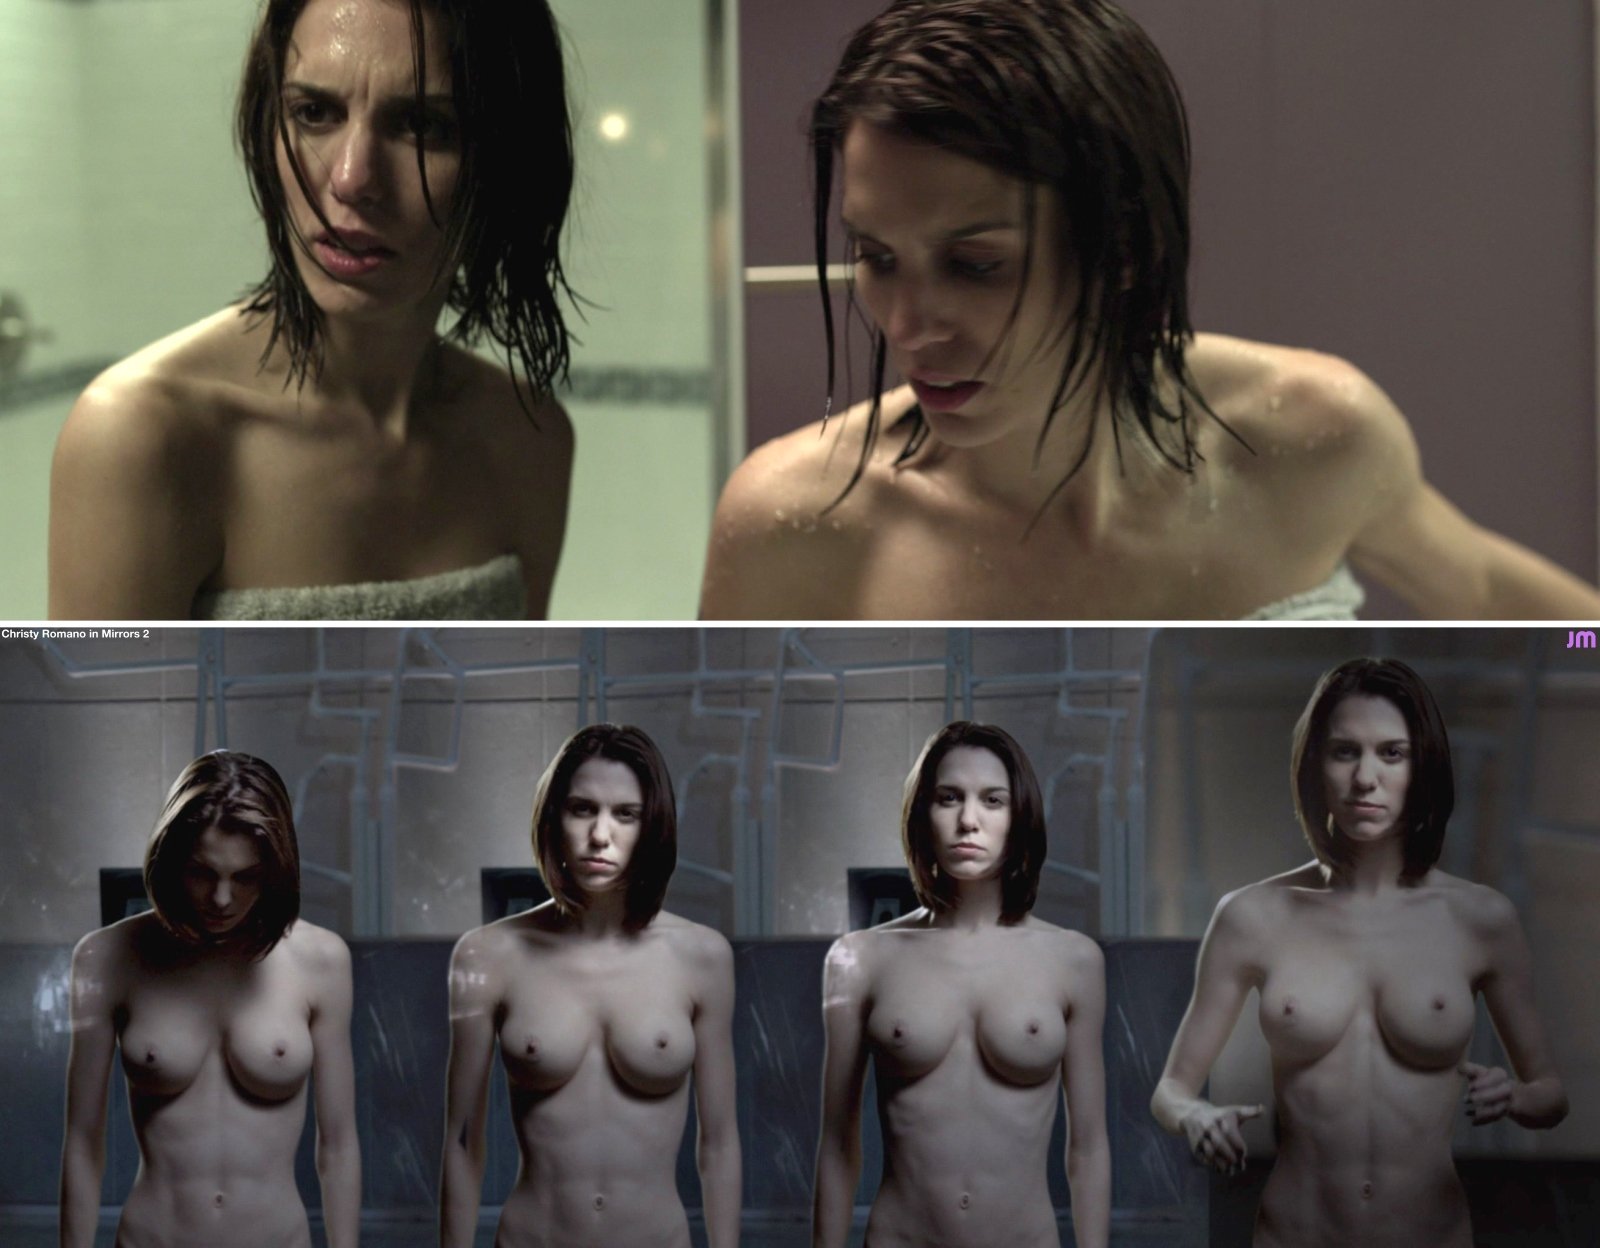 Кристи Карлсон Романо nude pics.